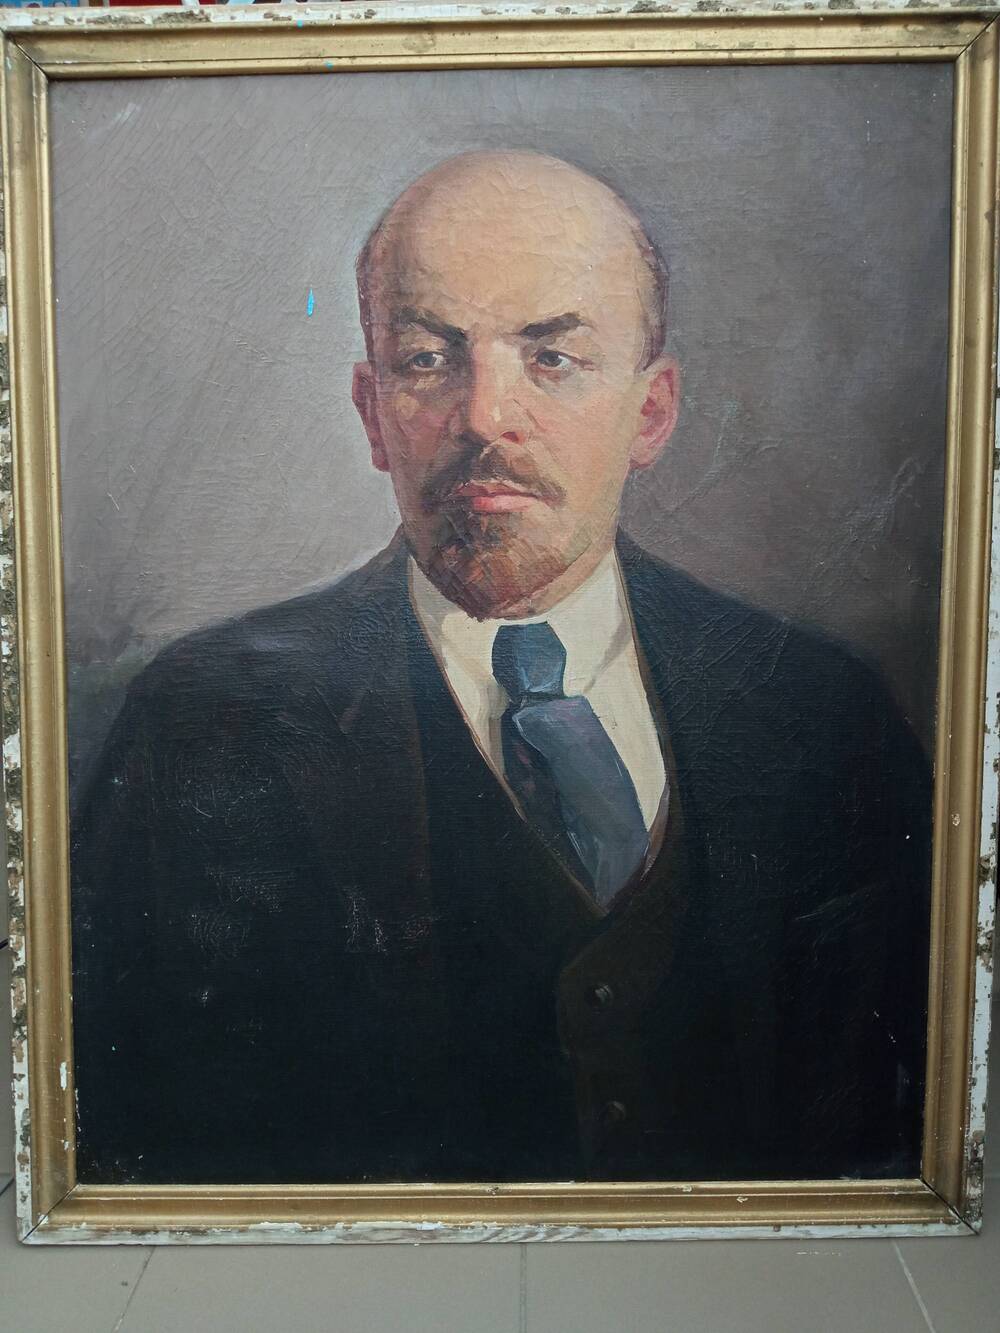 Картина-портрет В.И.Ленина, основателя Советского государства – СССР.